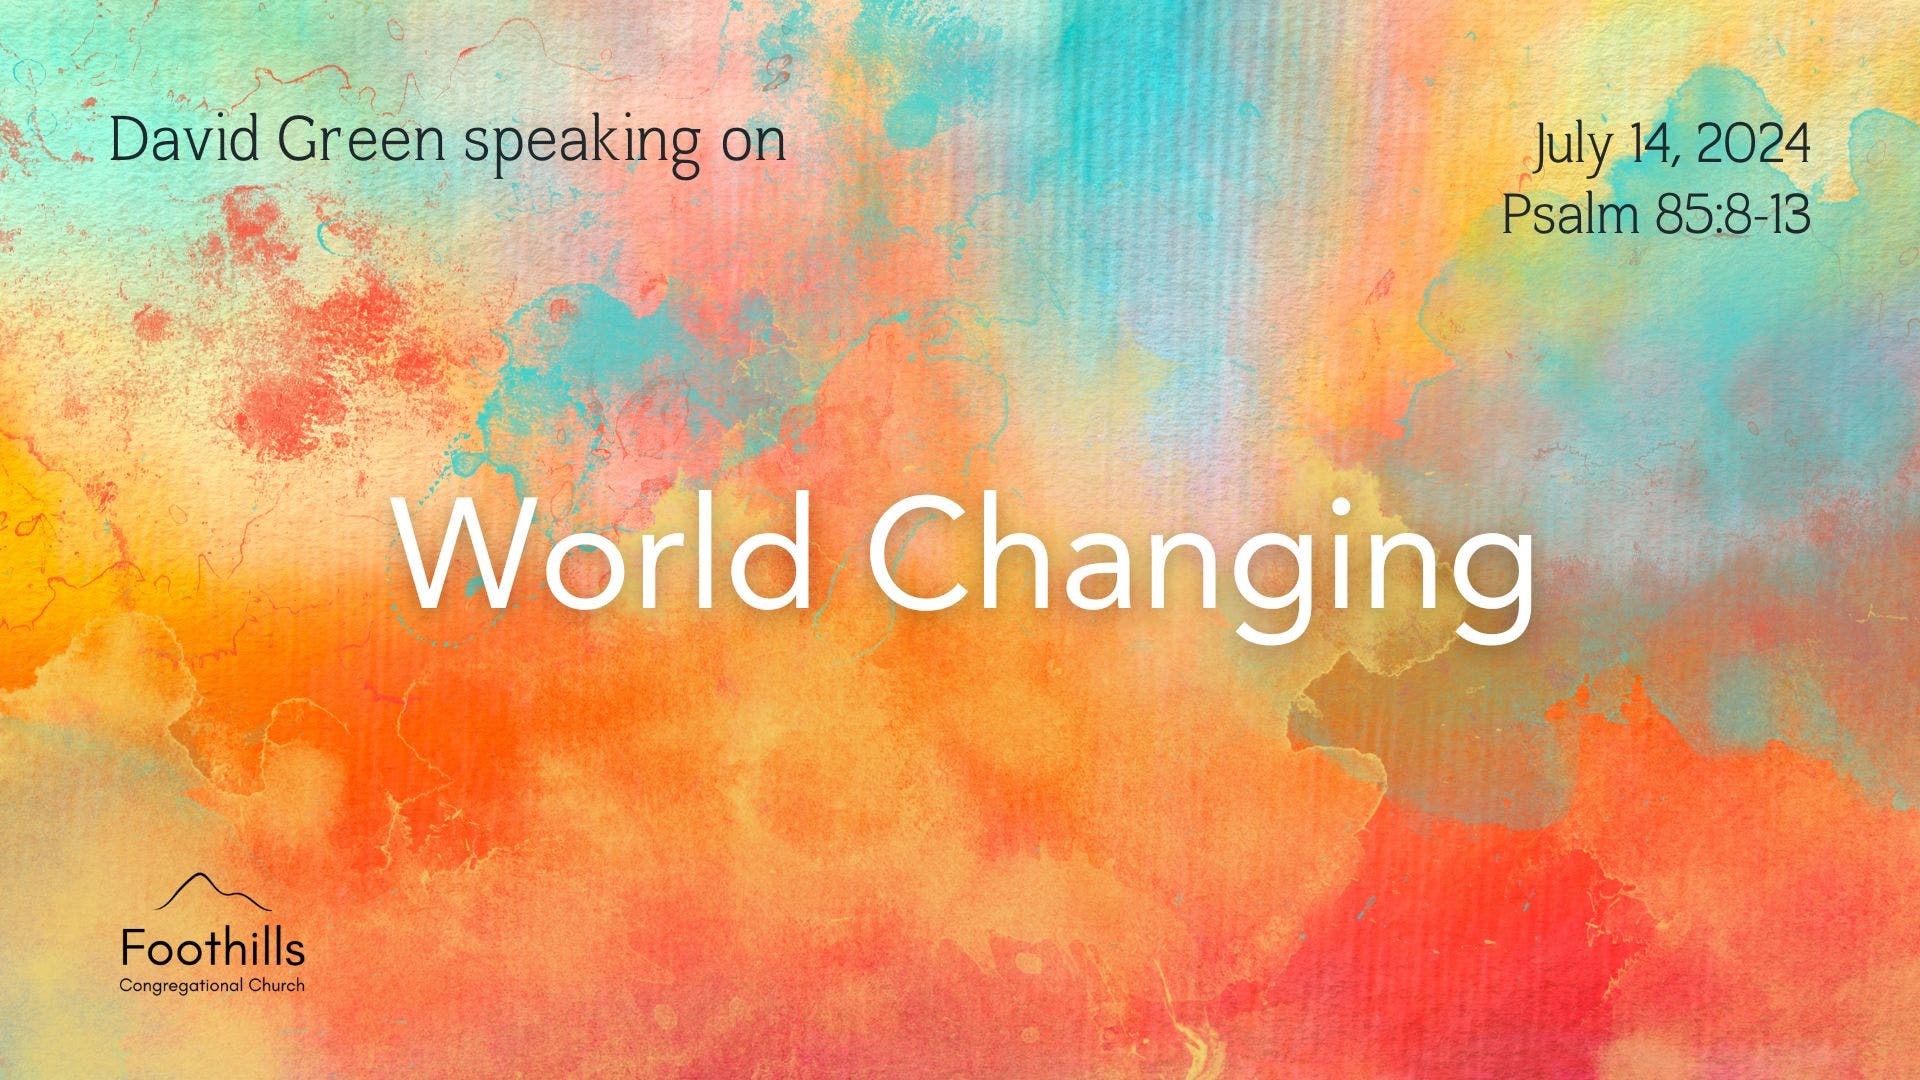 David Green speaking on "World Changing"